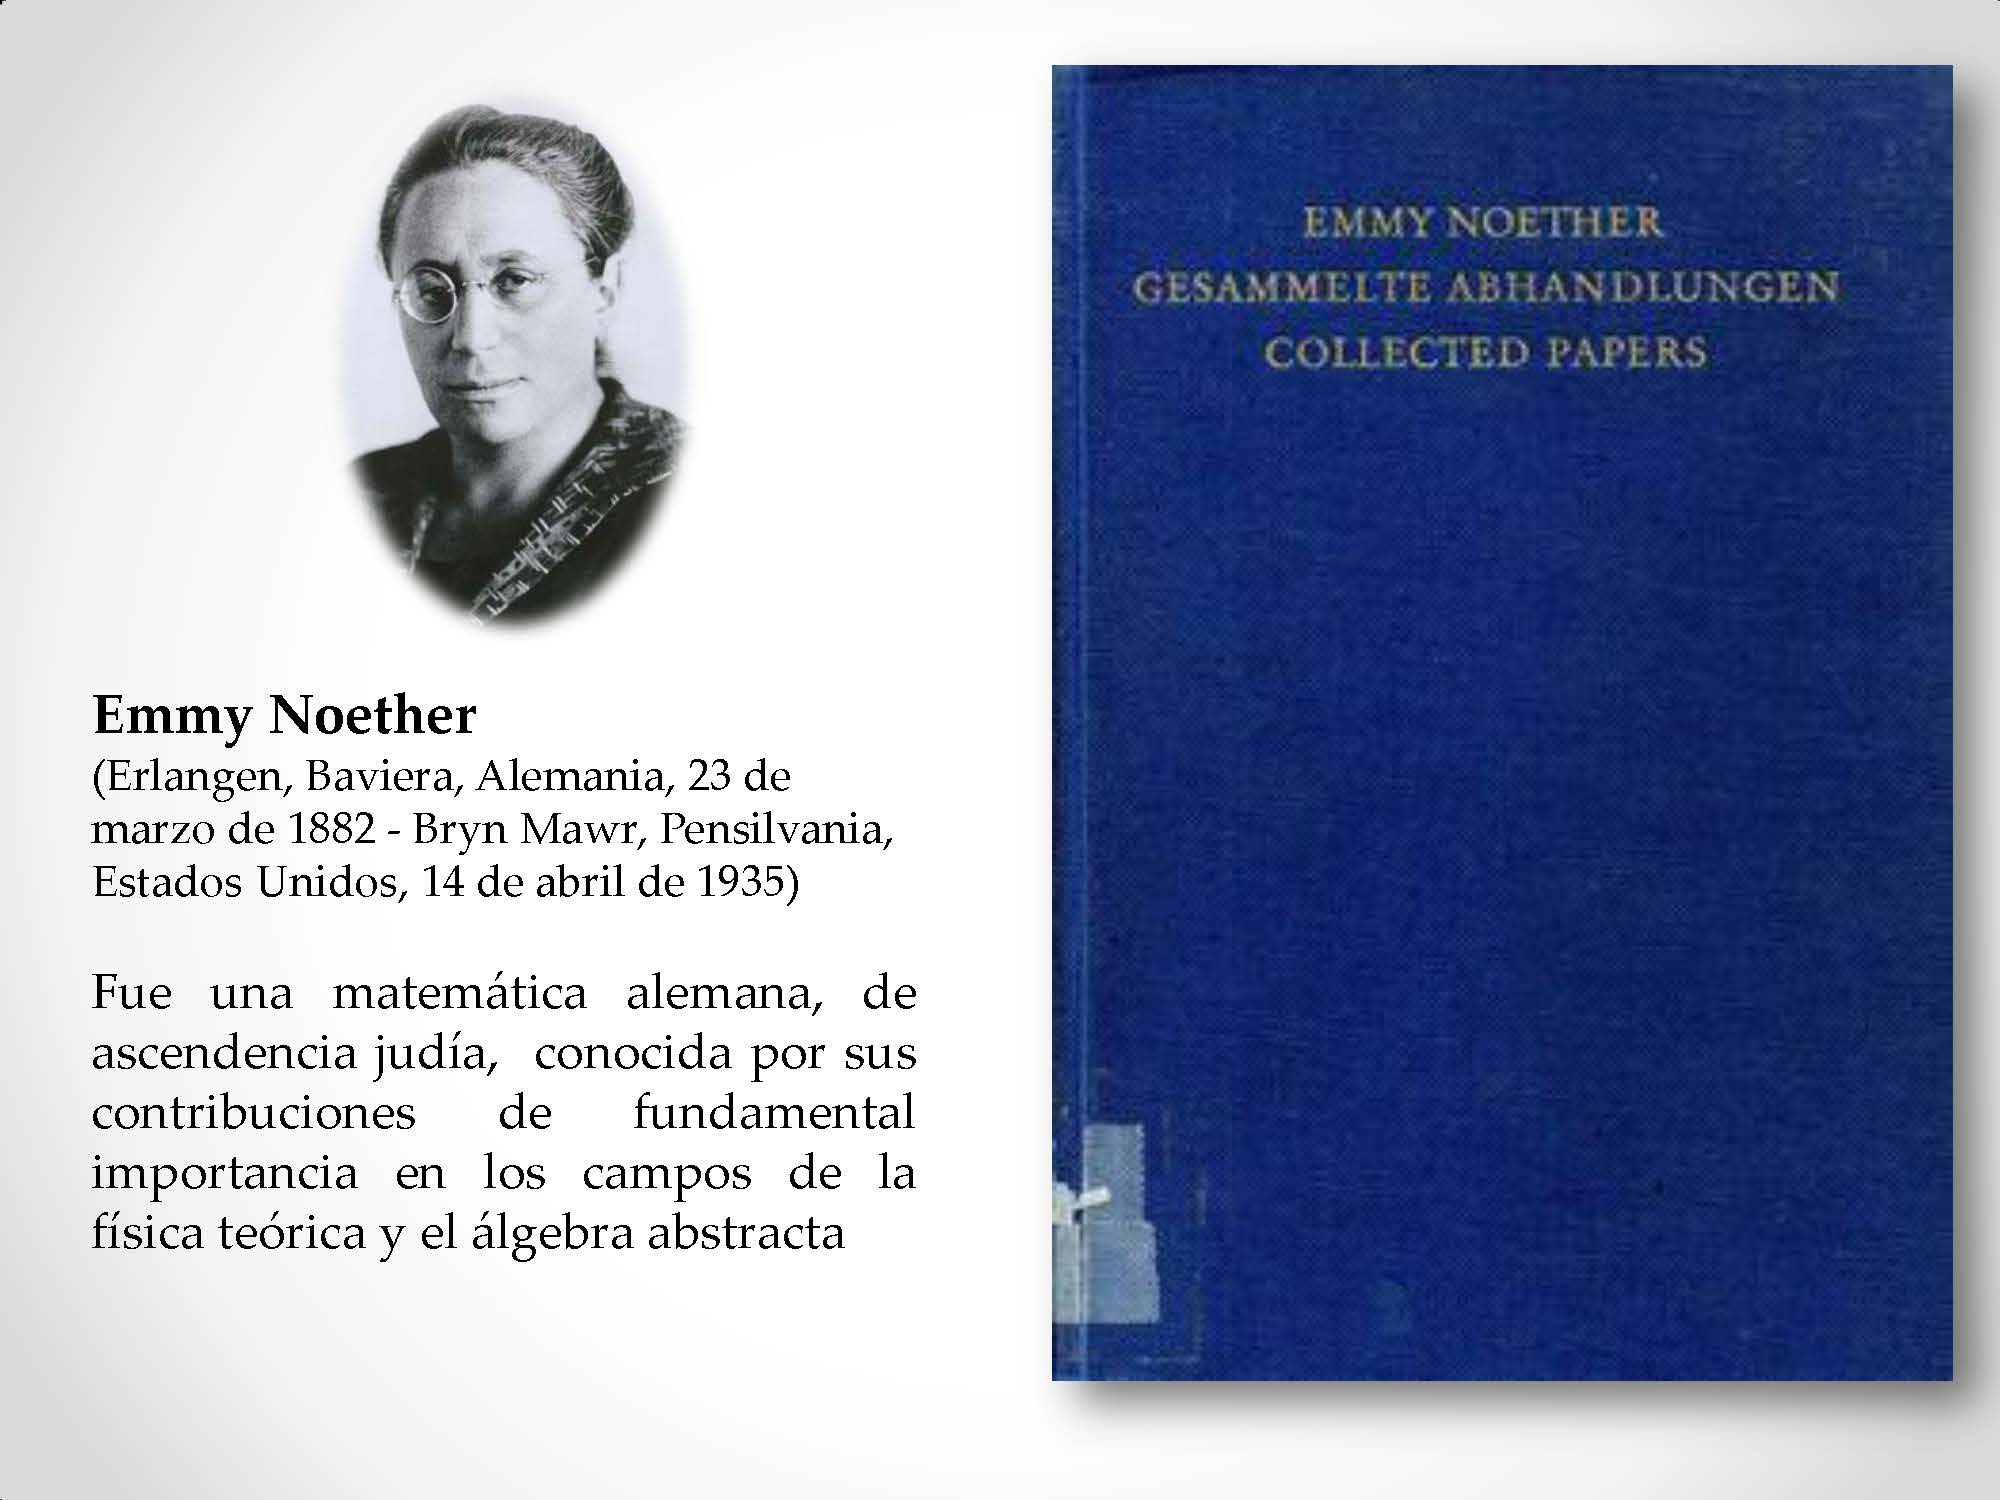 Emmy Noether (Erlangen, Baviera, Alemania, 23 de marzo de 1882 - Bryn Mawr, Pensilvania, Estados Unidos, 14 de abril de 1935) Fue una matemática alemana, de ascendencia judía, conocida por sus contribuciones de fundamental importancia en los campos de la física teórica y el álgebra abstracta